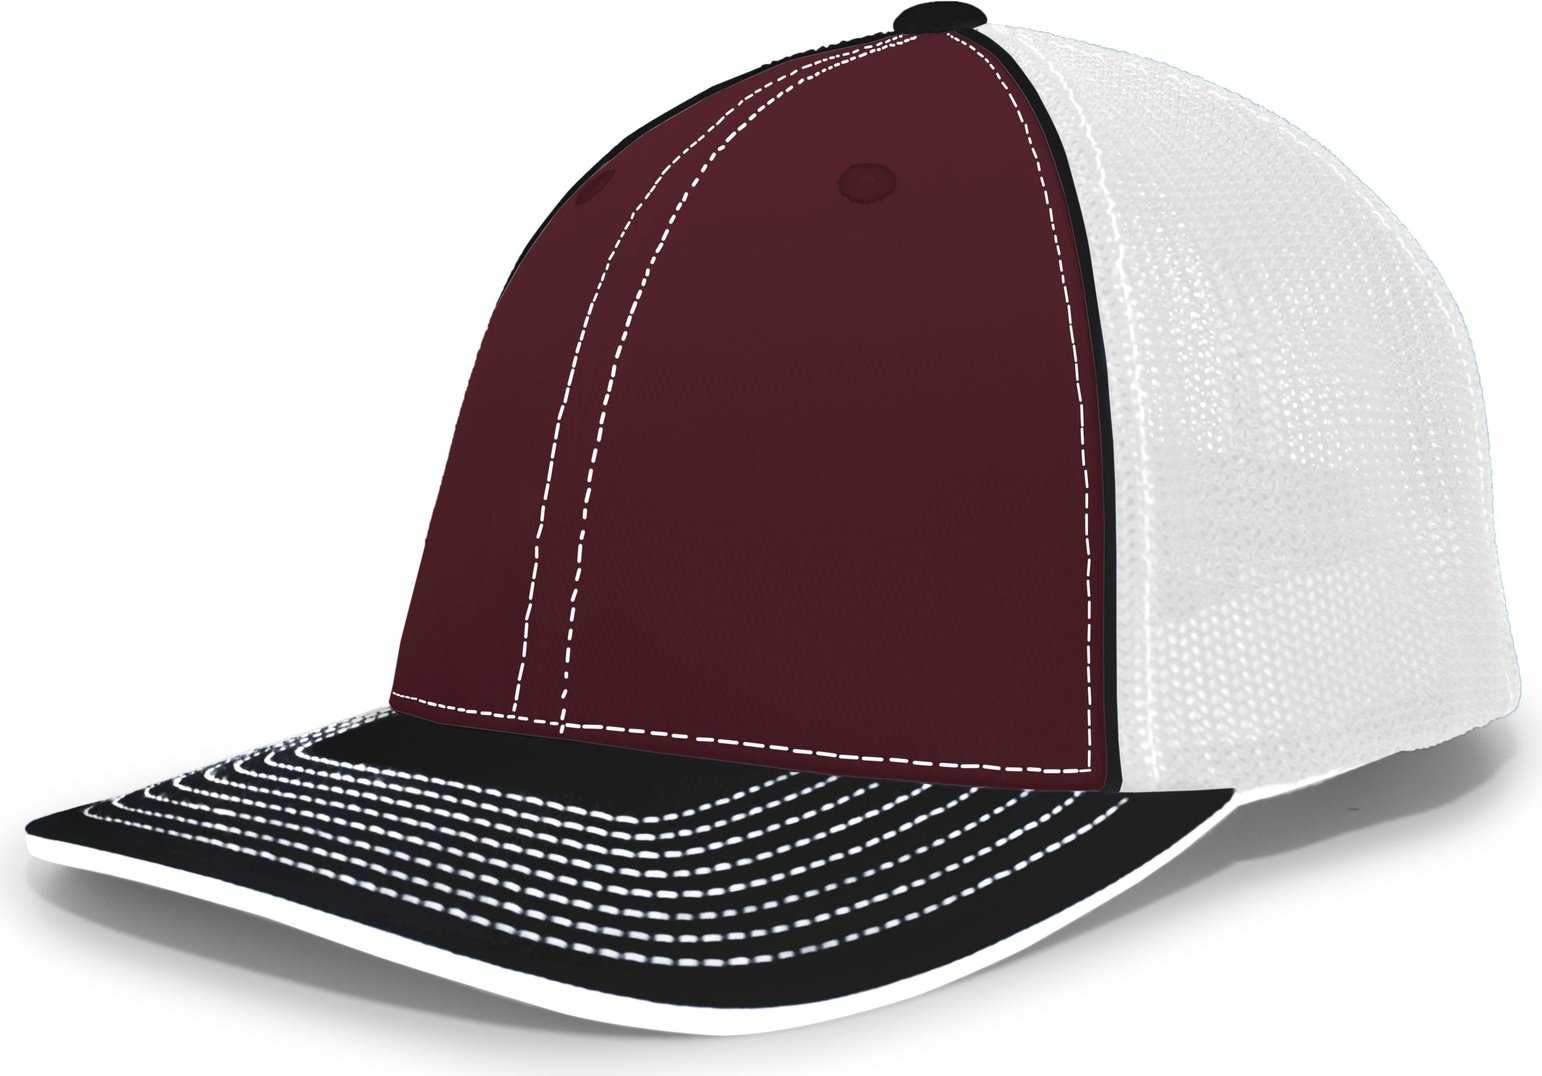 Pacific Headwear 404M Trucker Flexfit Cap - Maroon Black - HIT a Double